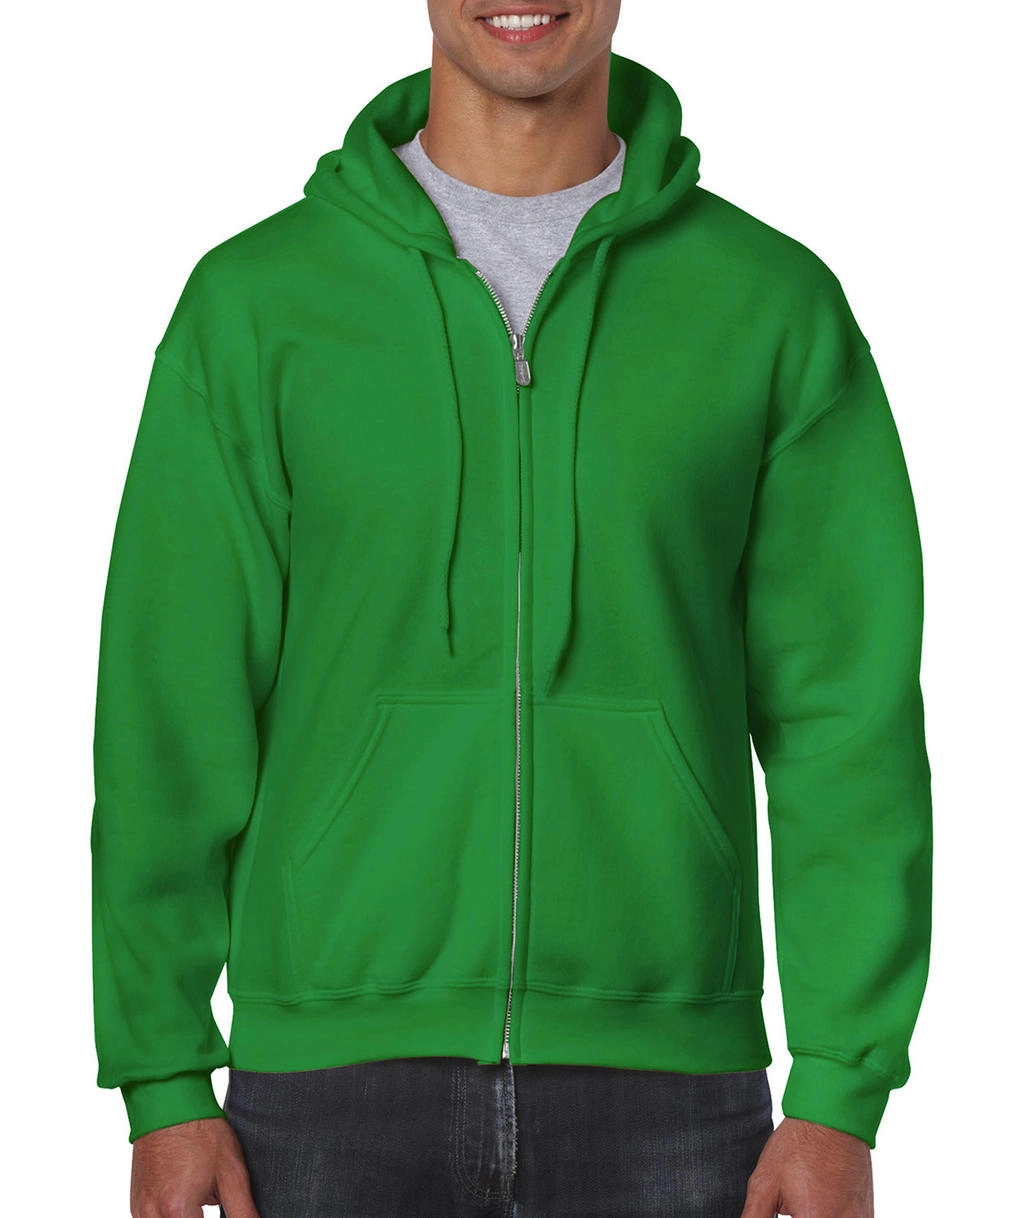 Heavy Blend Adult Full Zip Hooded Sweat zum Besticken und Bedrucken in der Farbe Irish Green mit Ihren Logo, Schriftzug oder Motiv.